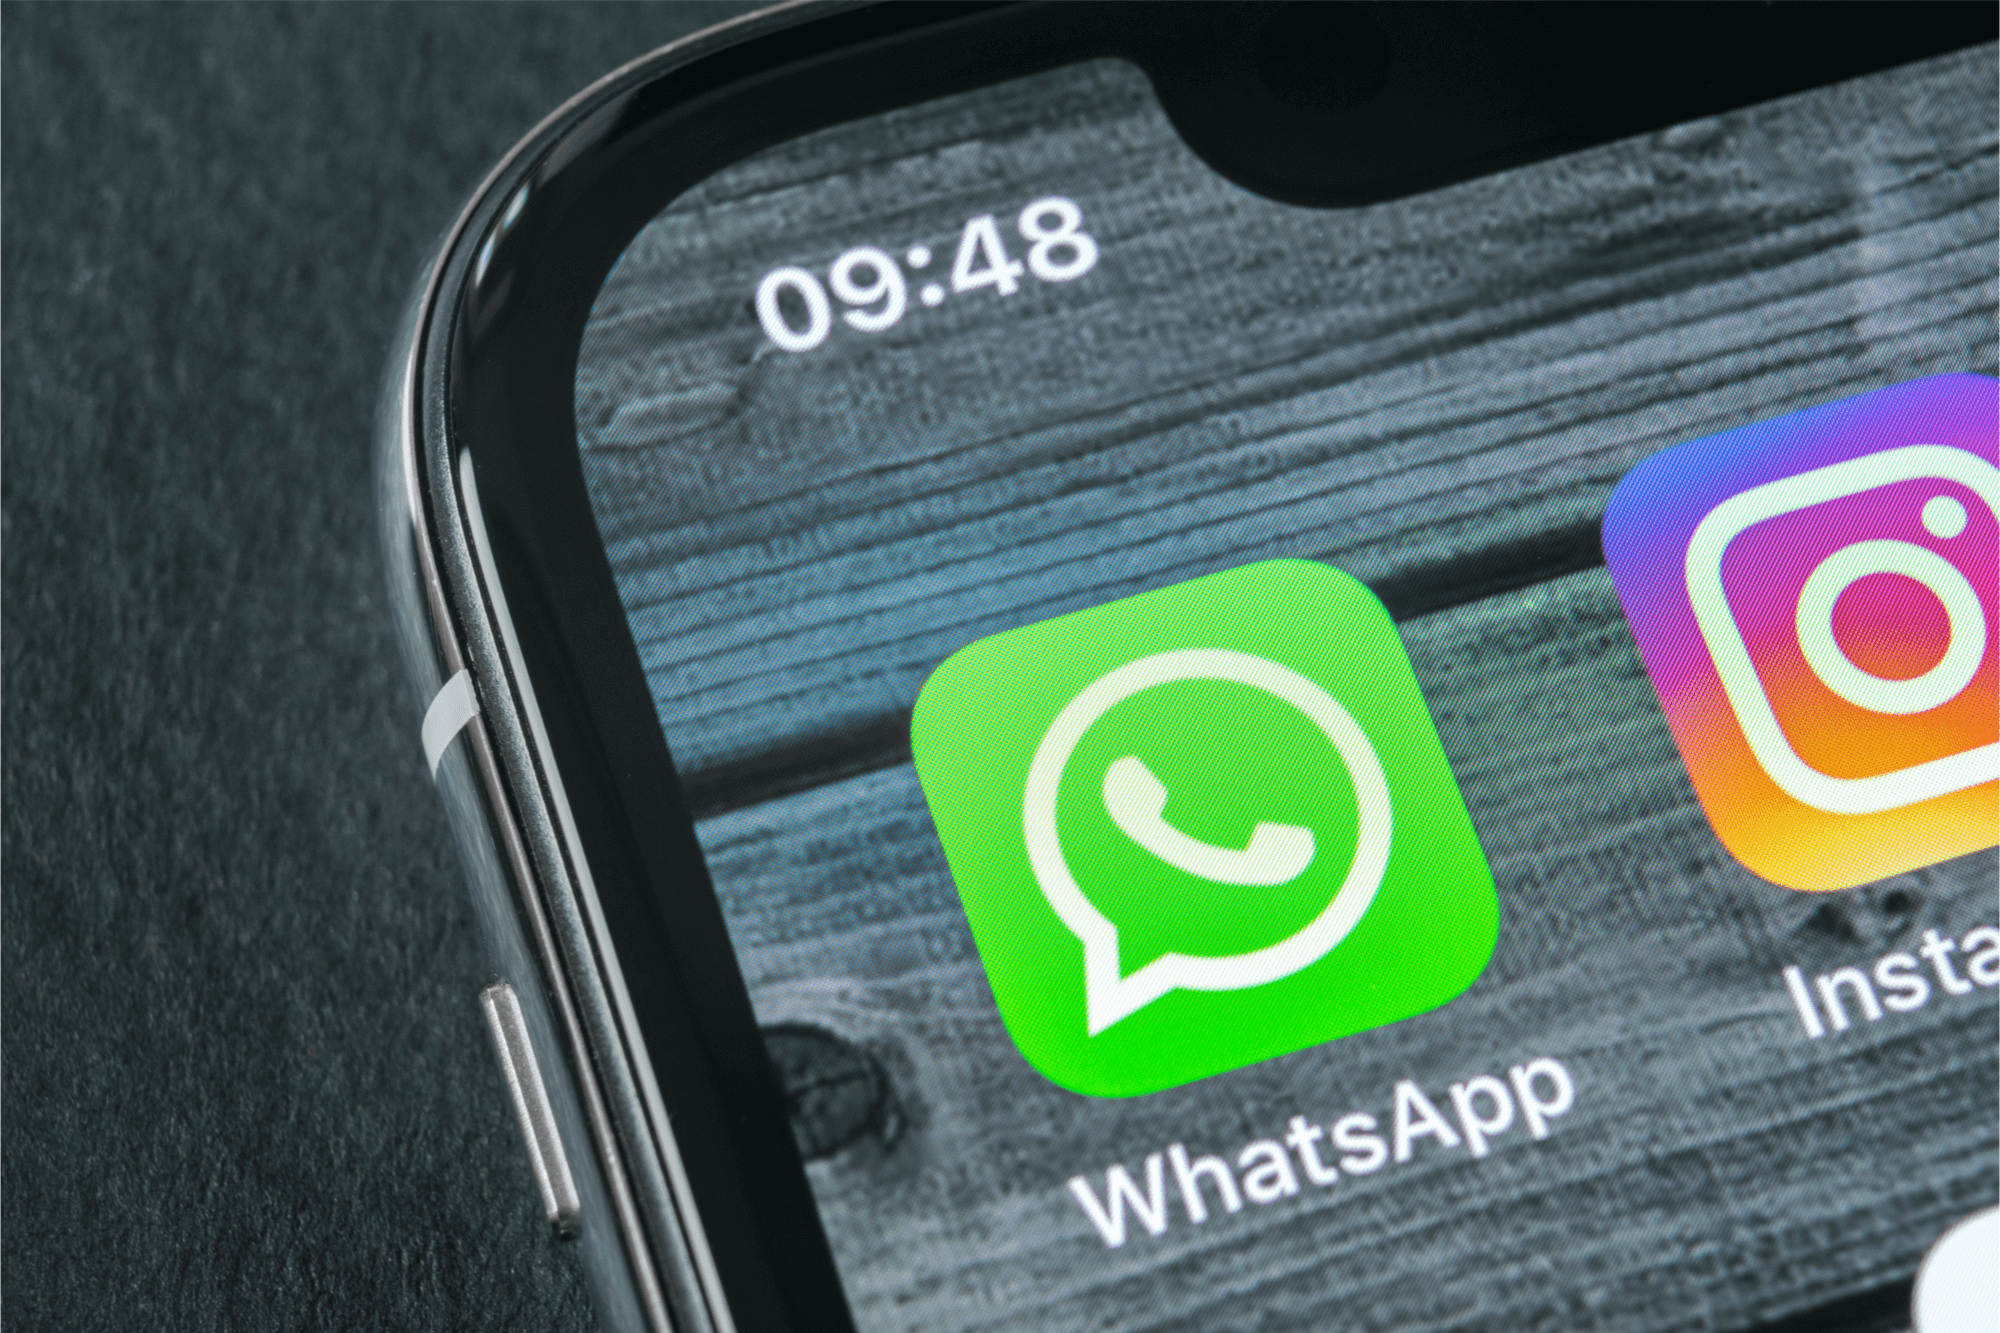 Отзыв заявления об увольнении по WhatsApp - можно ли так?